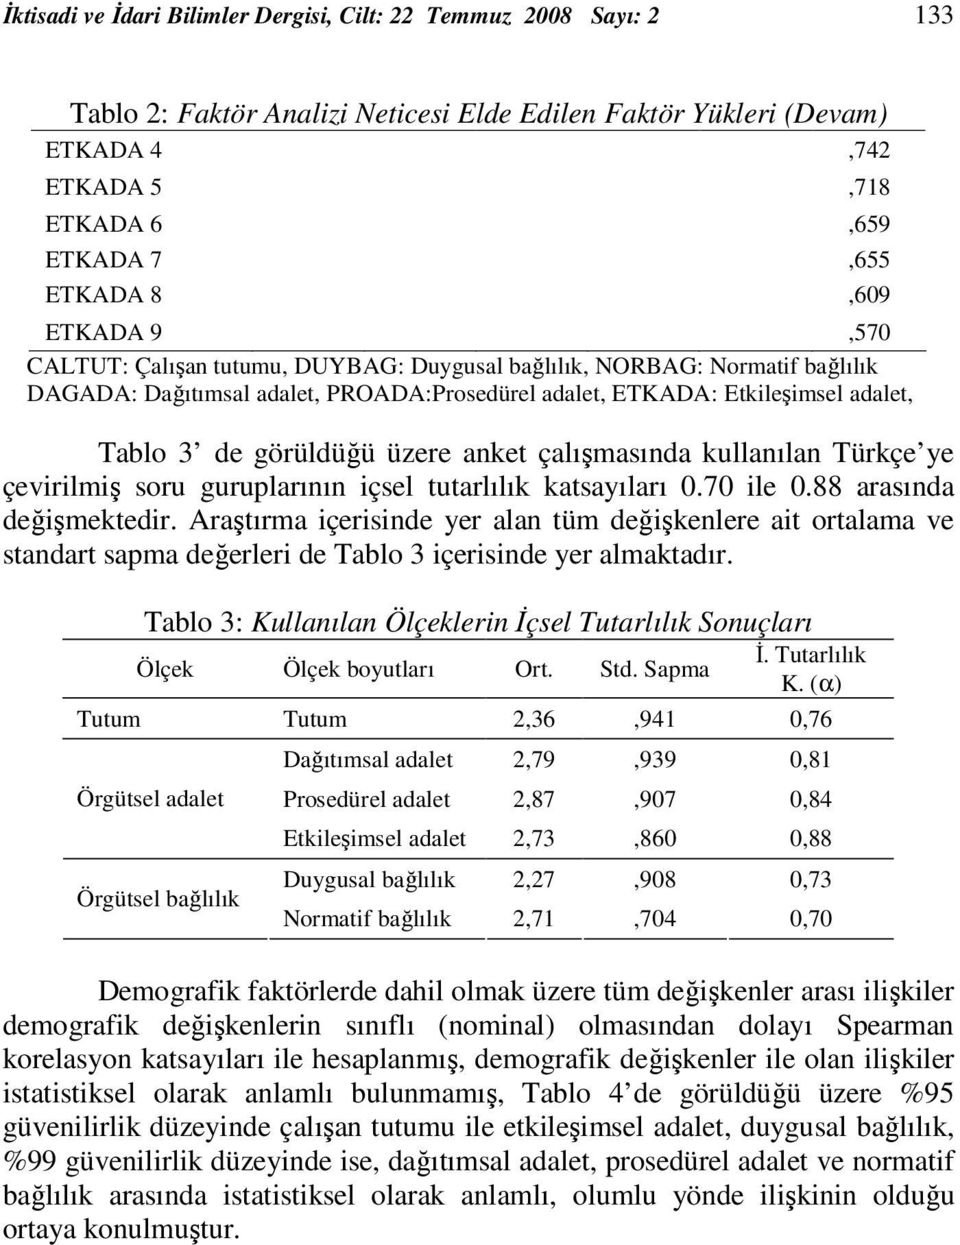 üzere anket çalışmasında kullanılan Türkçe ye çevirilmiş soru guruplarının içsel tutarlılık katsayıları 0.70 ile 0.88 arasında değişmektedir.